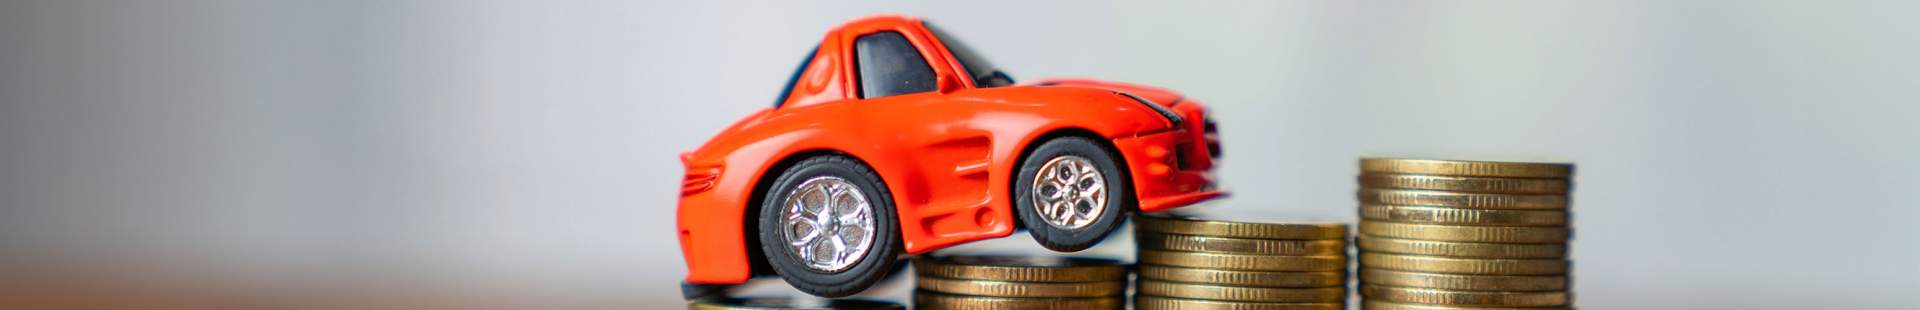 Kleines rotes Spielzeugauto auf einem Münzstapel